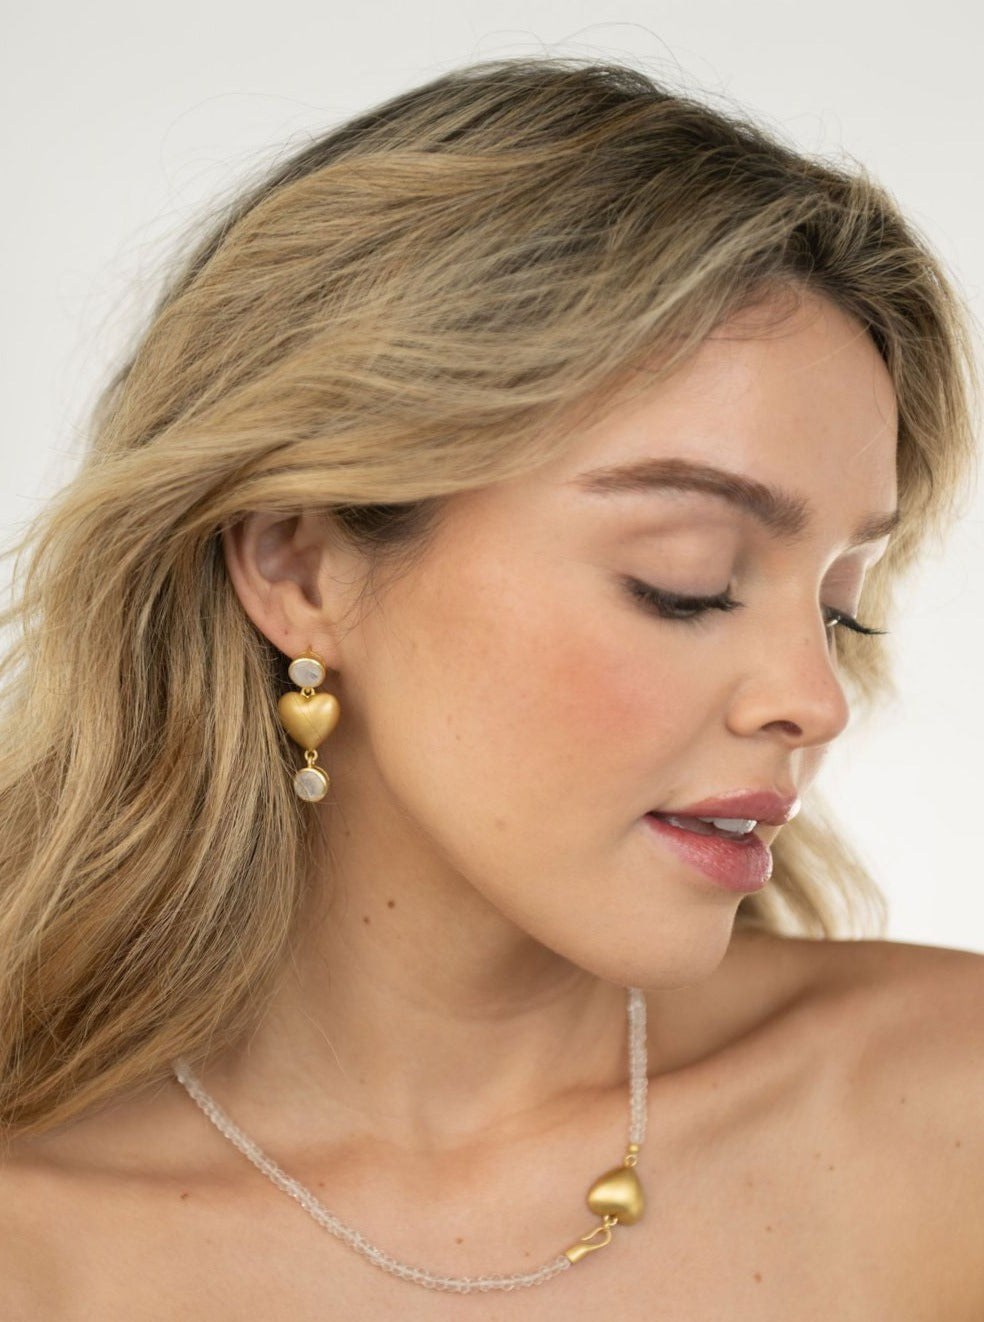 Beau & Ro Earrings Beau & Ro Jewelry | Heart Earring in Rainbow Moonstone